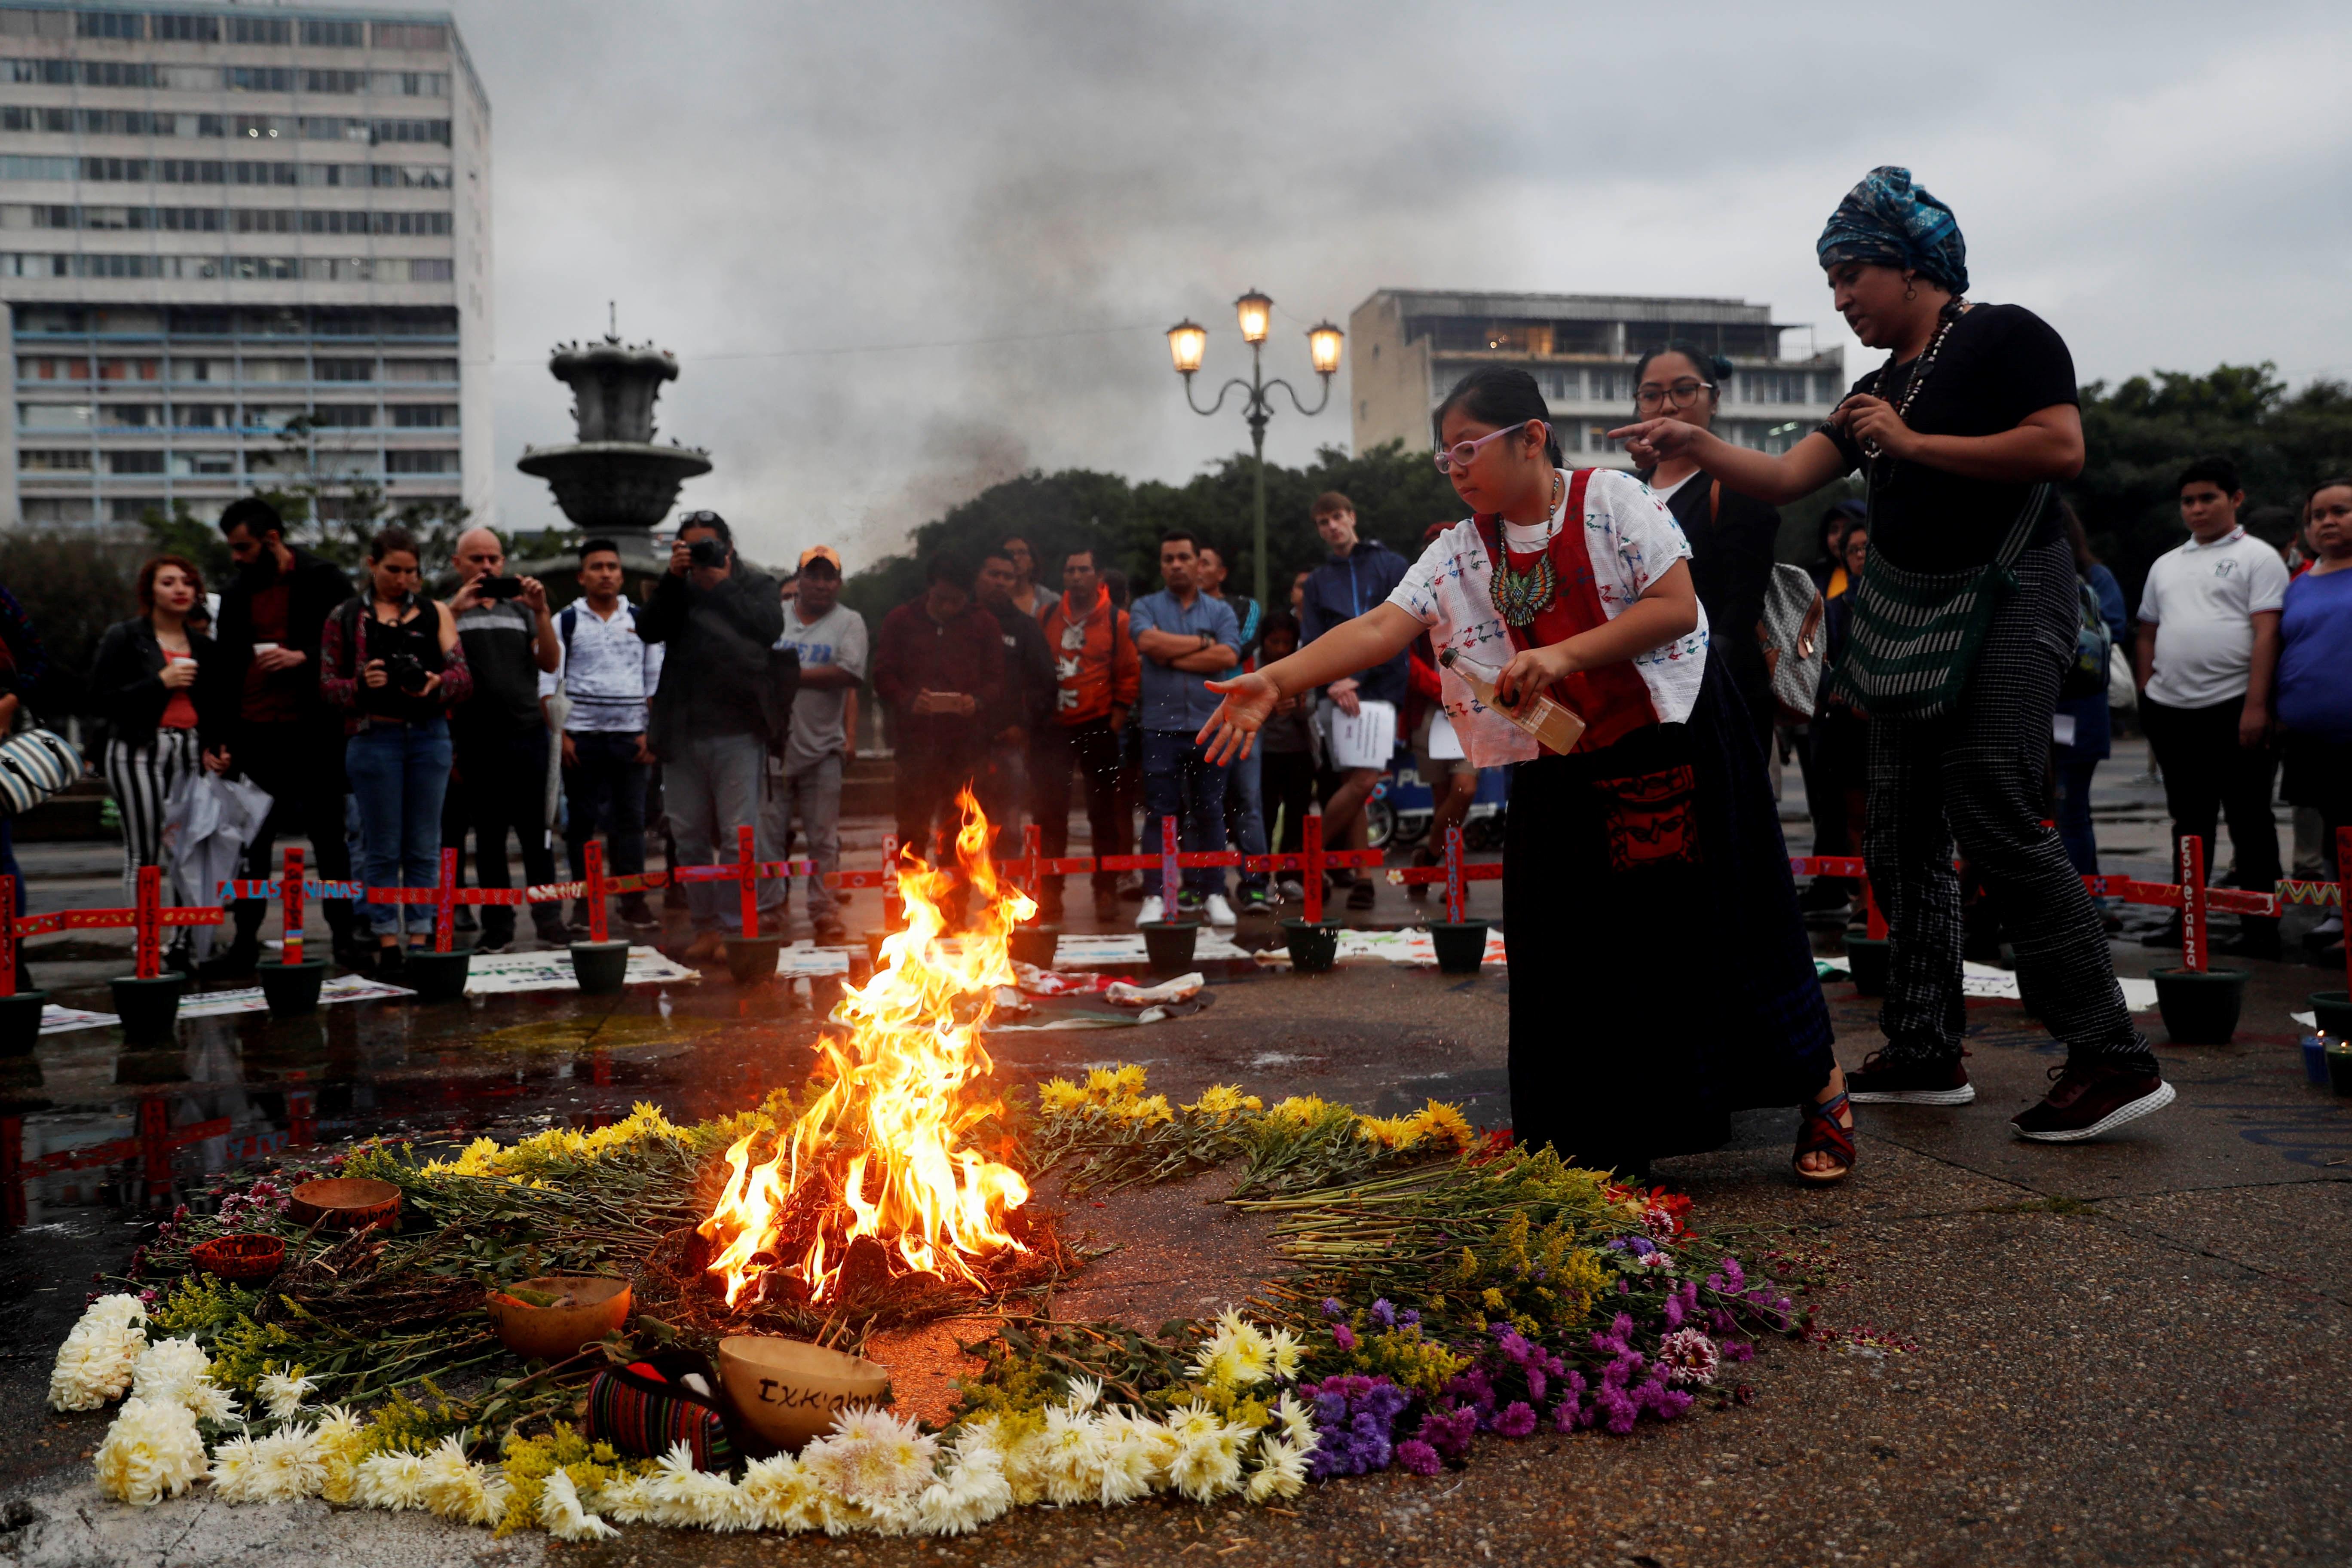 Una niña aviva el fuego durante una ceremonia para reinstalar el altar en memoria de las 41 niñas y adolescentes que murieron quemadas en el Hogar Seguro. (Foto Prensa Libre: EFE)